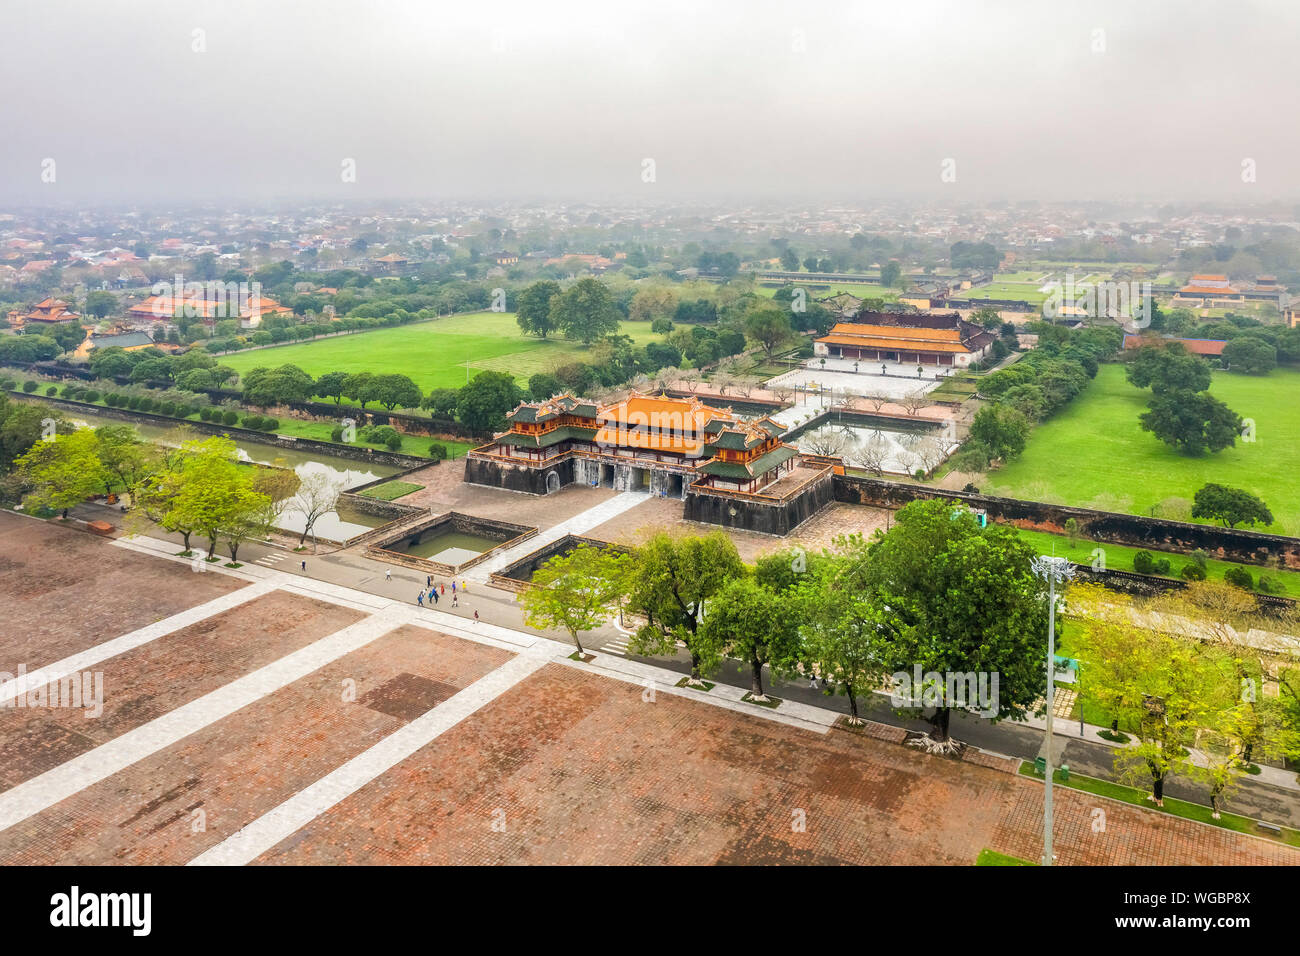 La Ciudadela de Hue. Palacio Imperial de la dinastía Nguyen en Hue, Vietnam. Un sitio de Patrimonio Mundial de la Unesco. Foto de stock